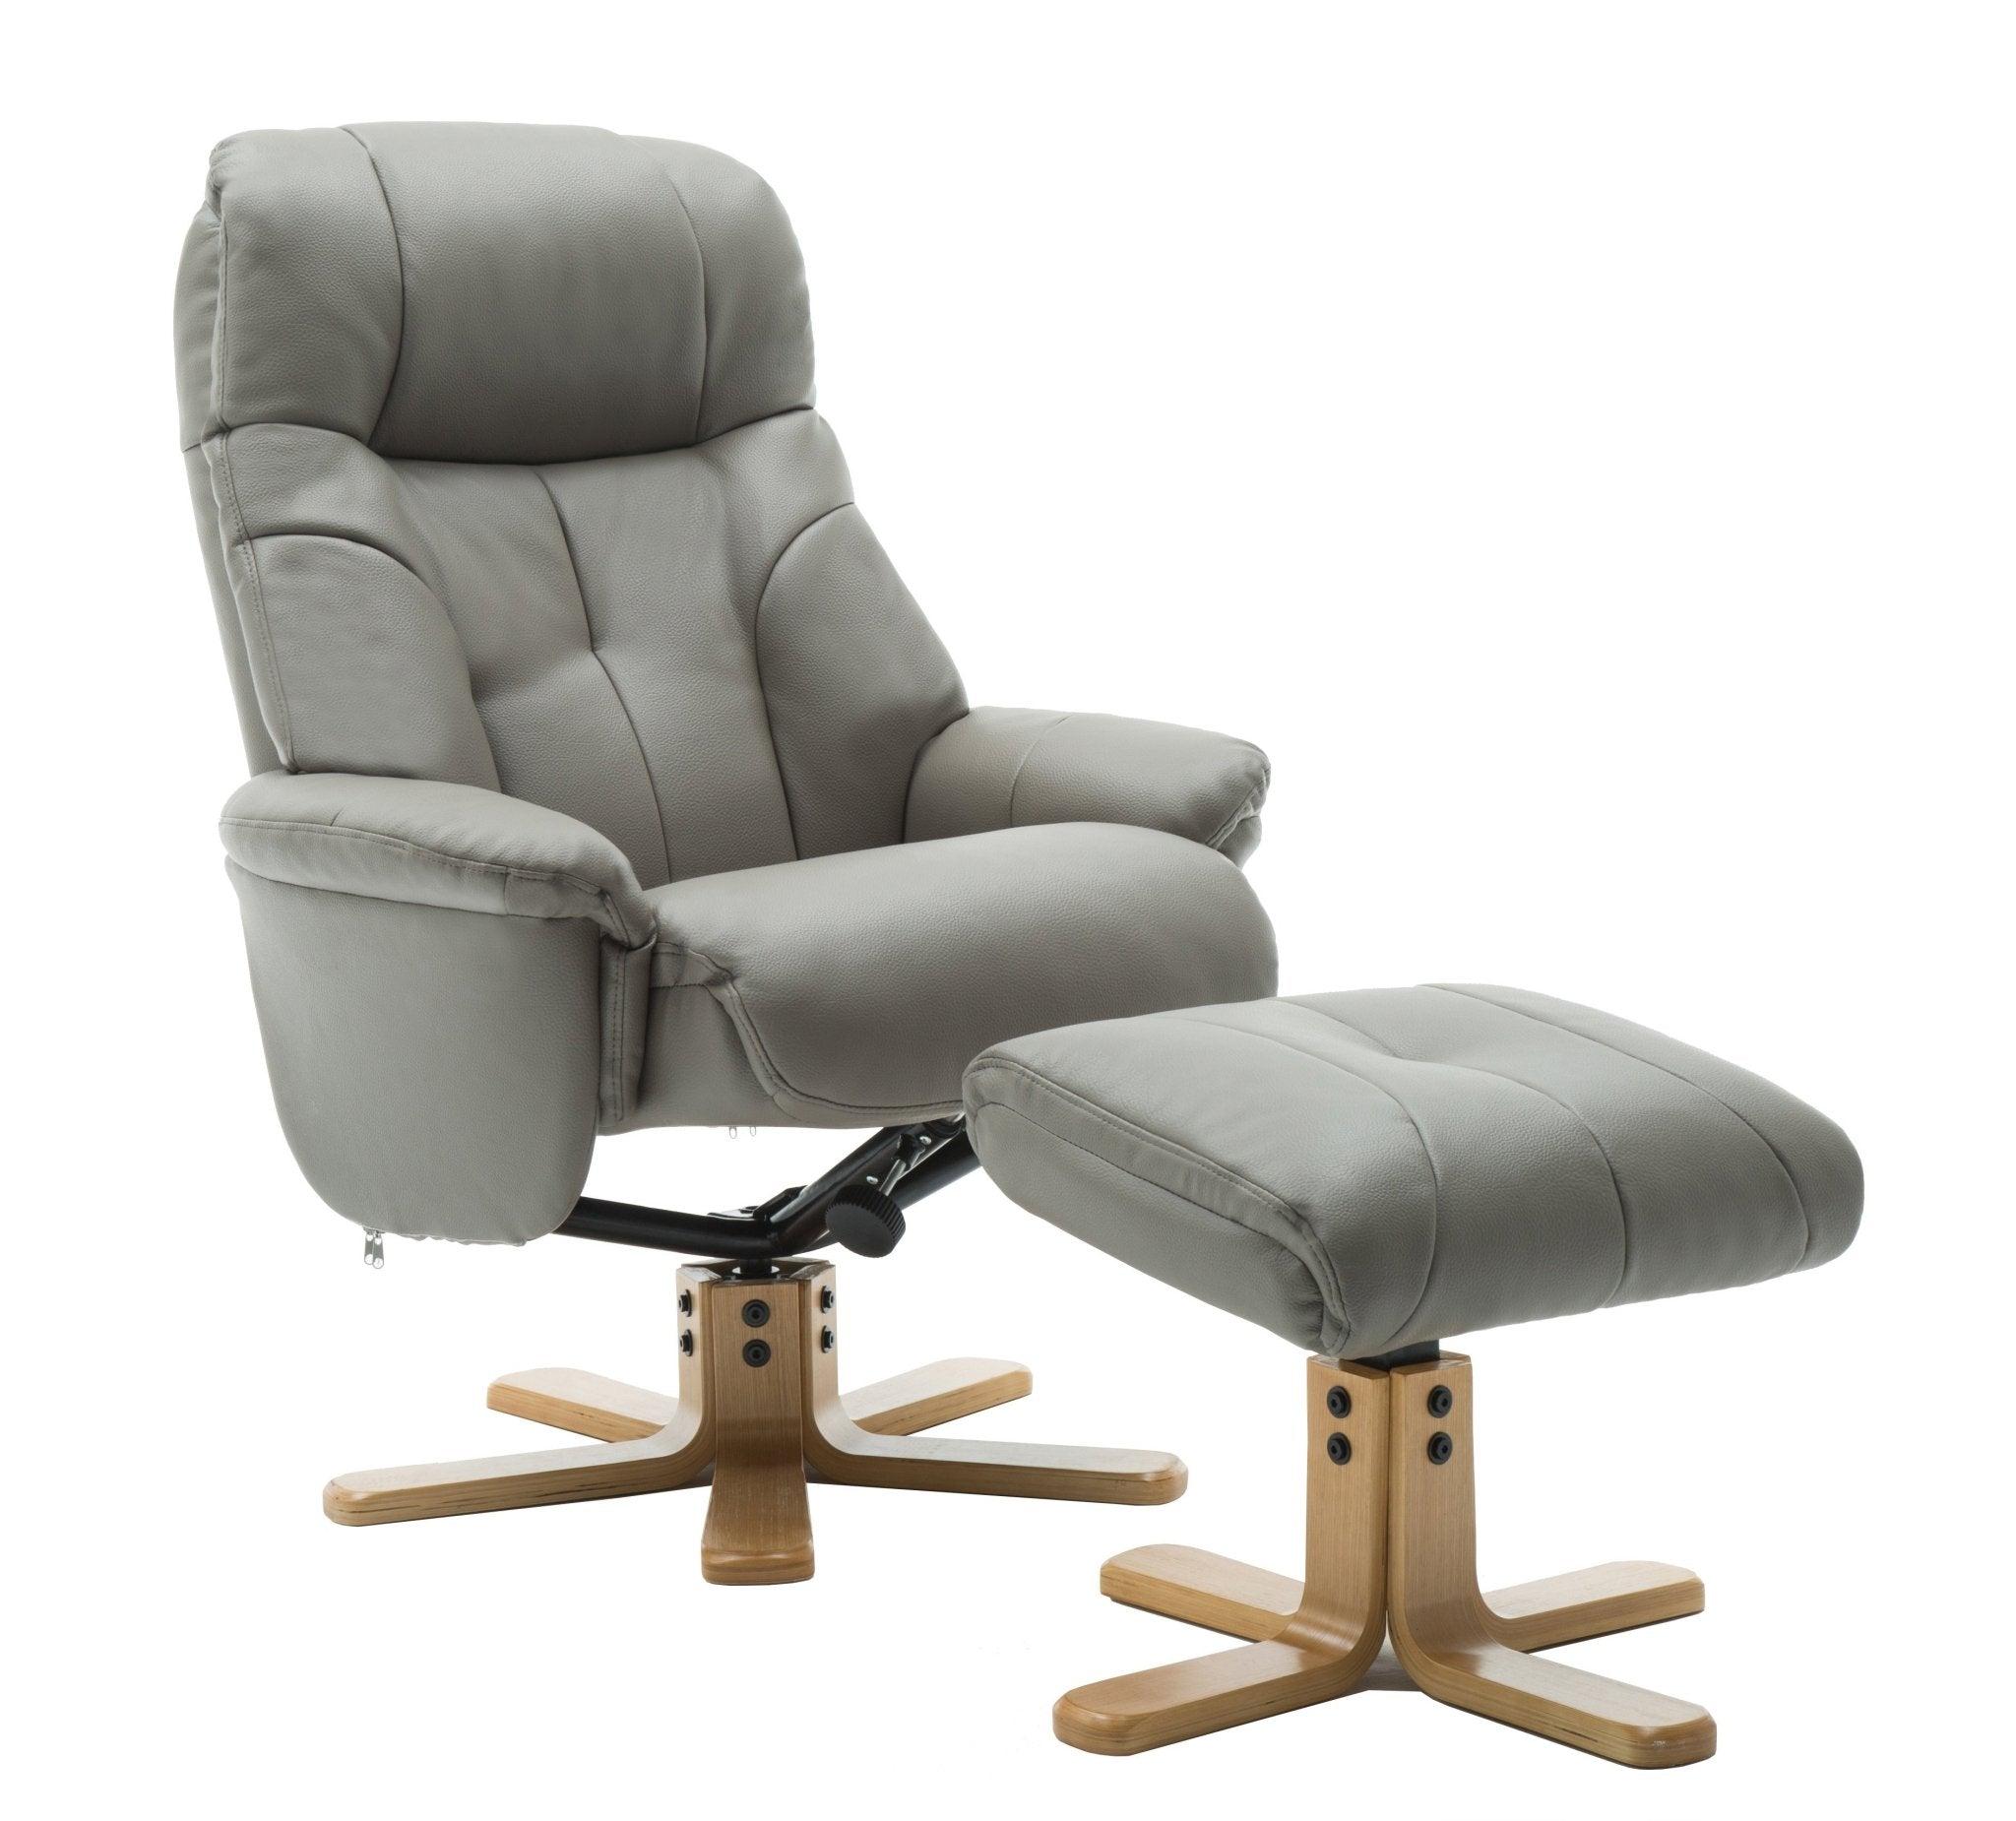 Recliner - denver grey - crimblefest furniture - image 1